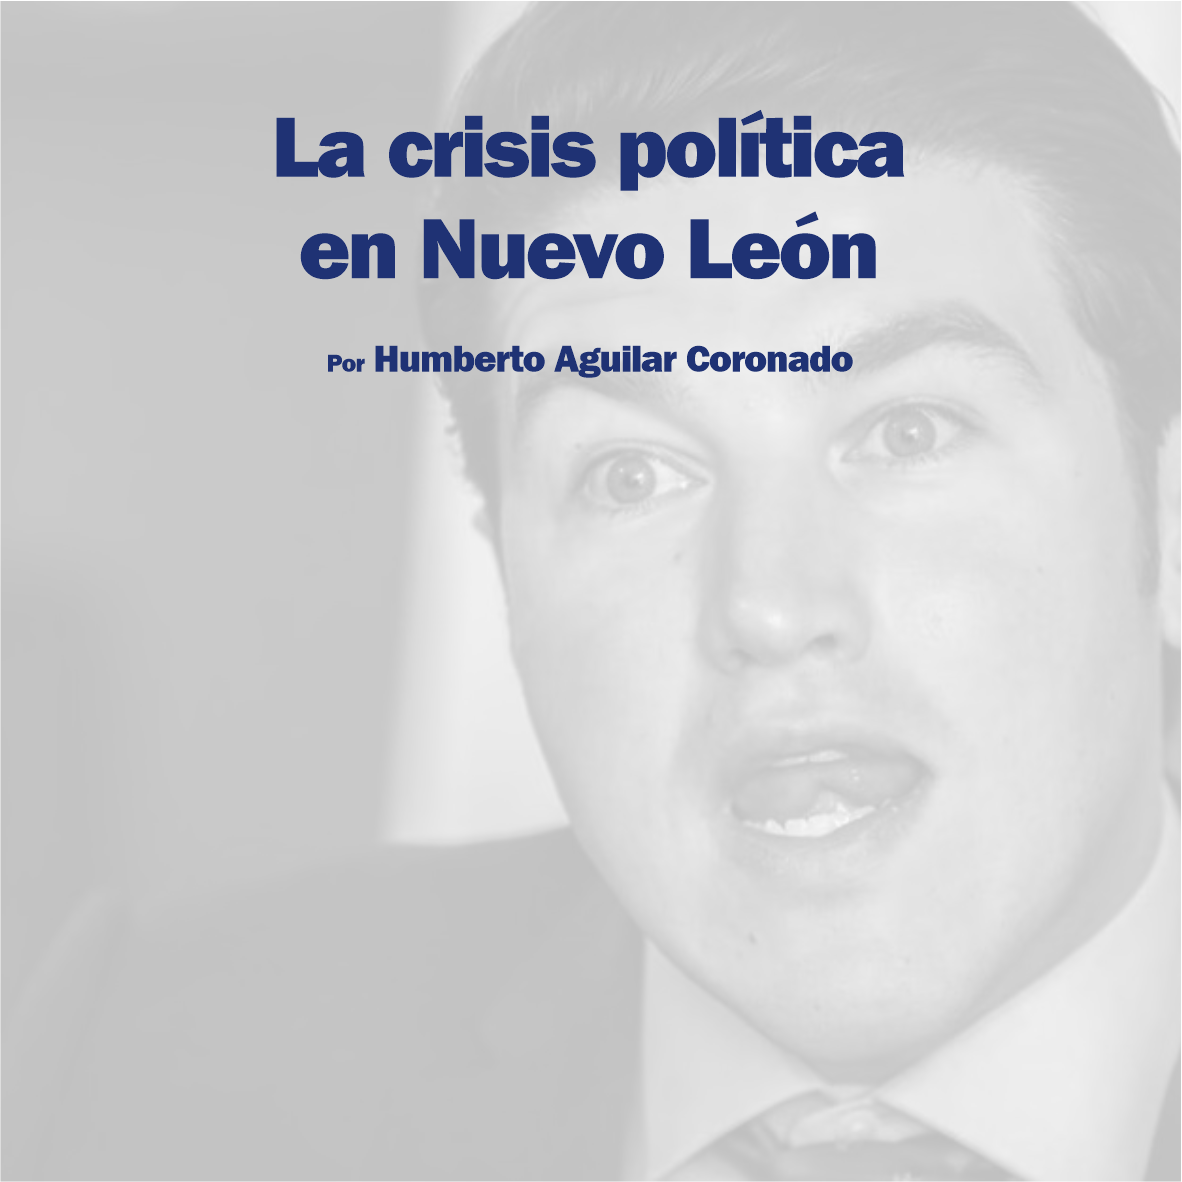 La crisis política en Nuevo León